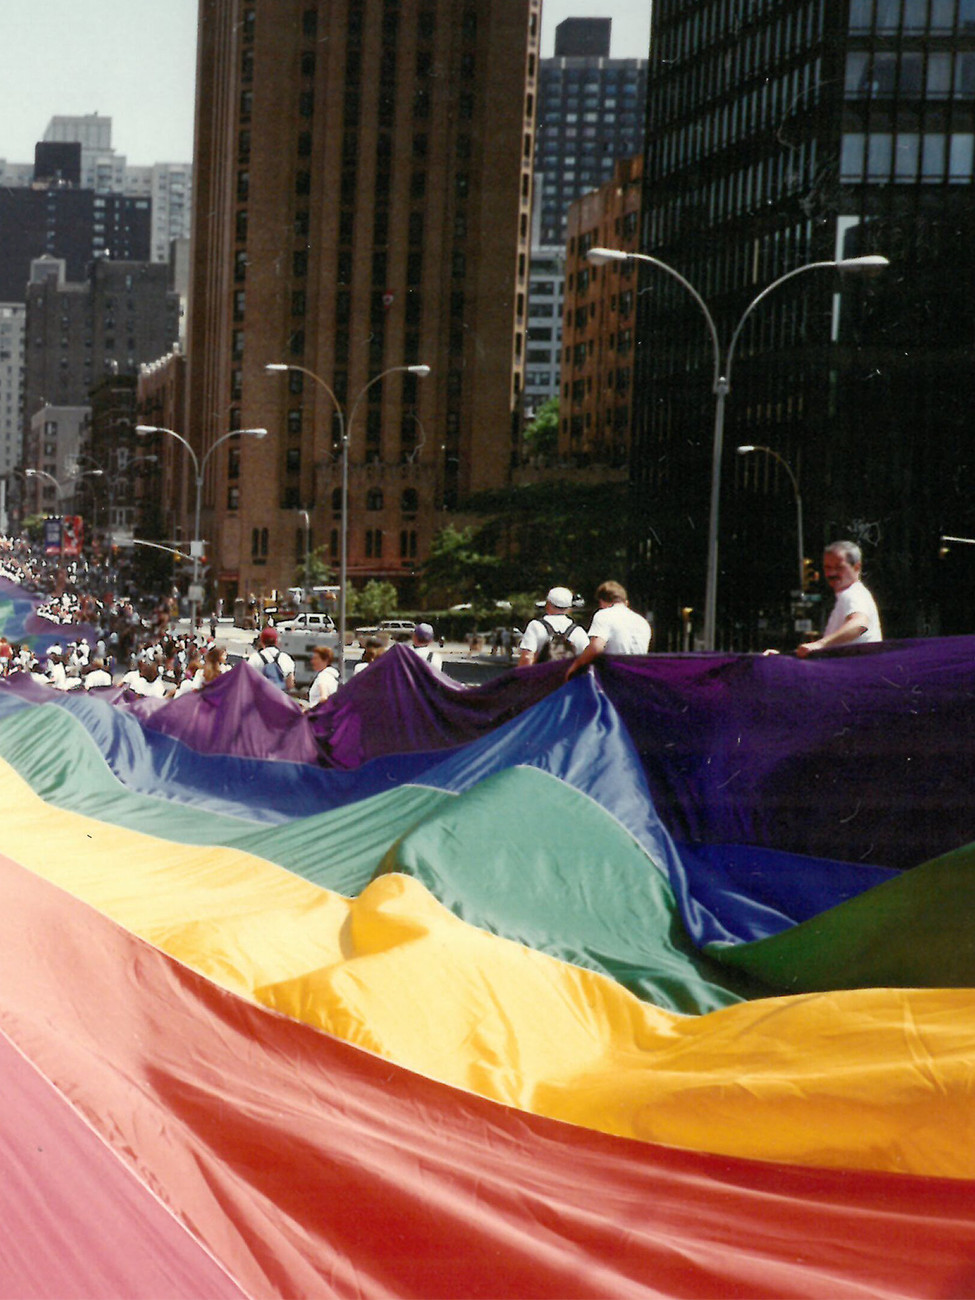 Eine ca. 1,6 km lange Version der Flagge wird zum 25. Jahrestag der Stonewall-Aufstände in der First Avenue in New York City gezeigt